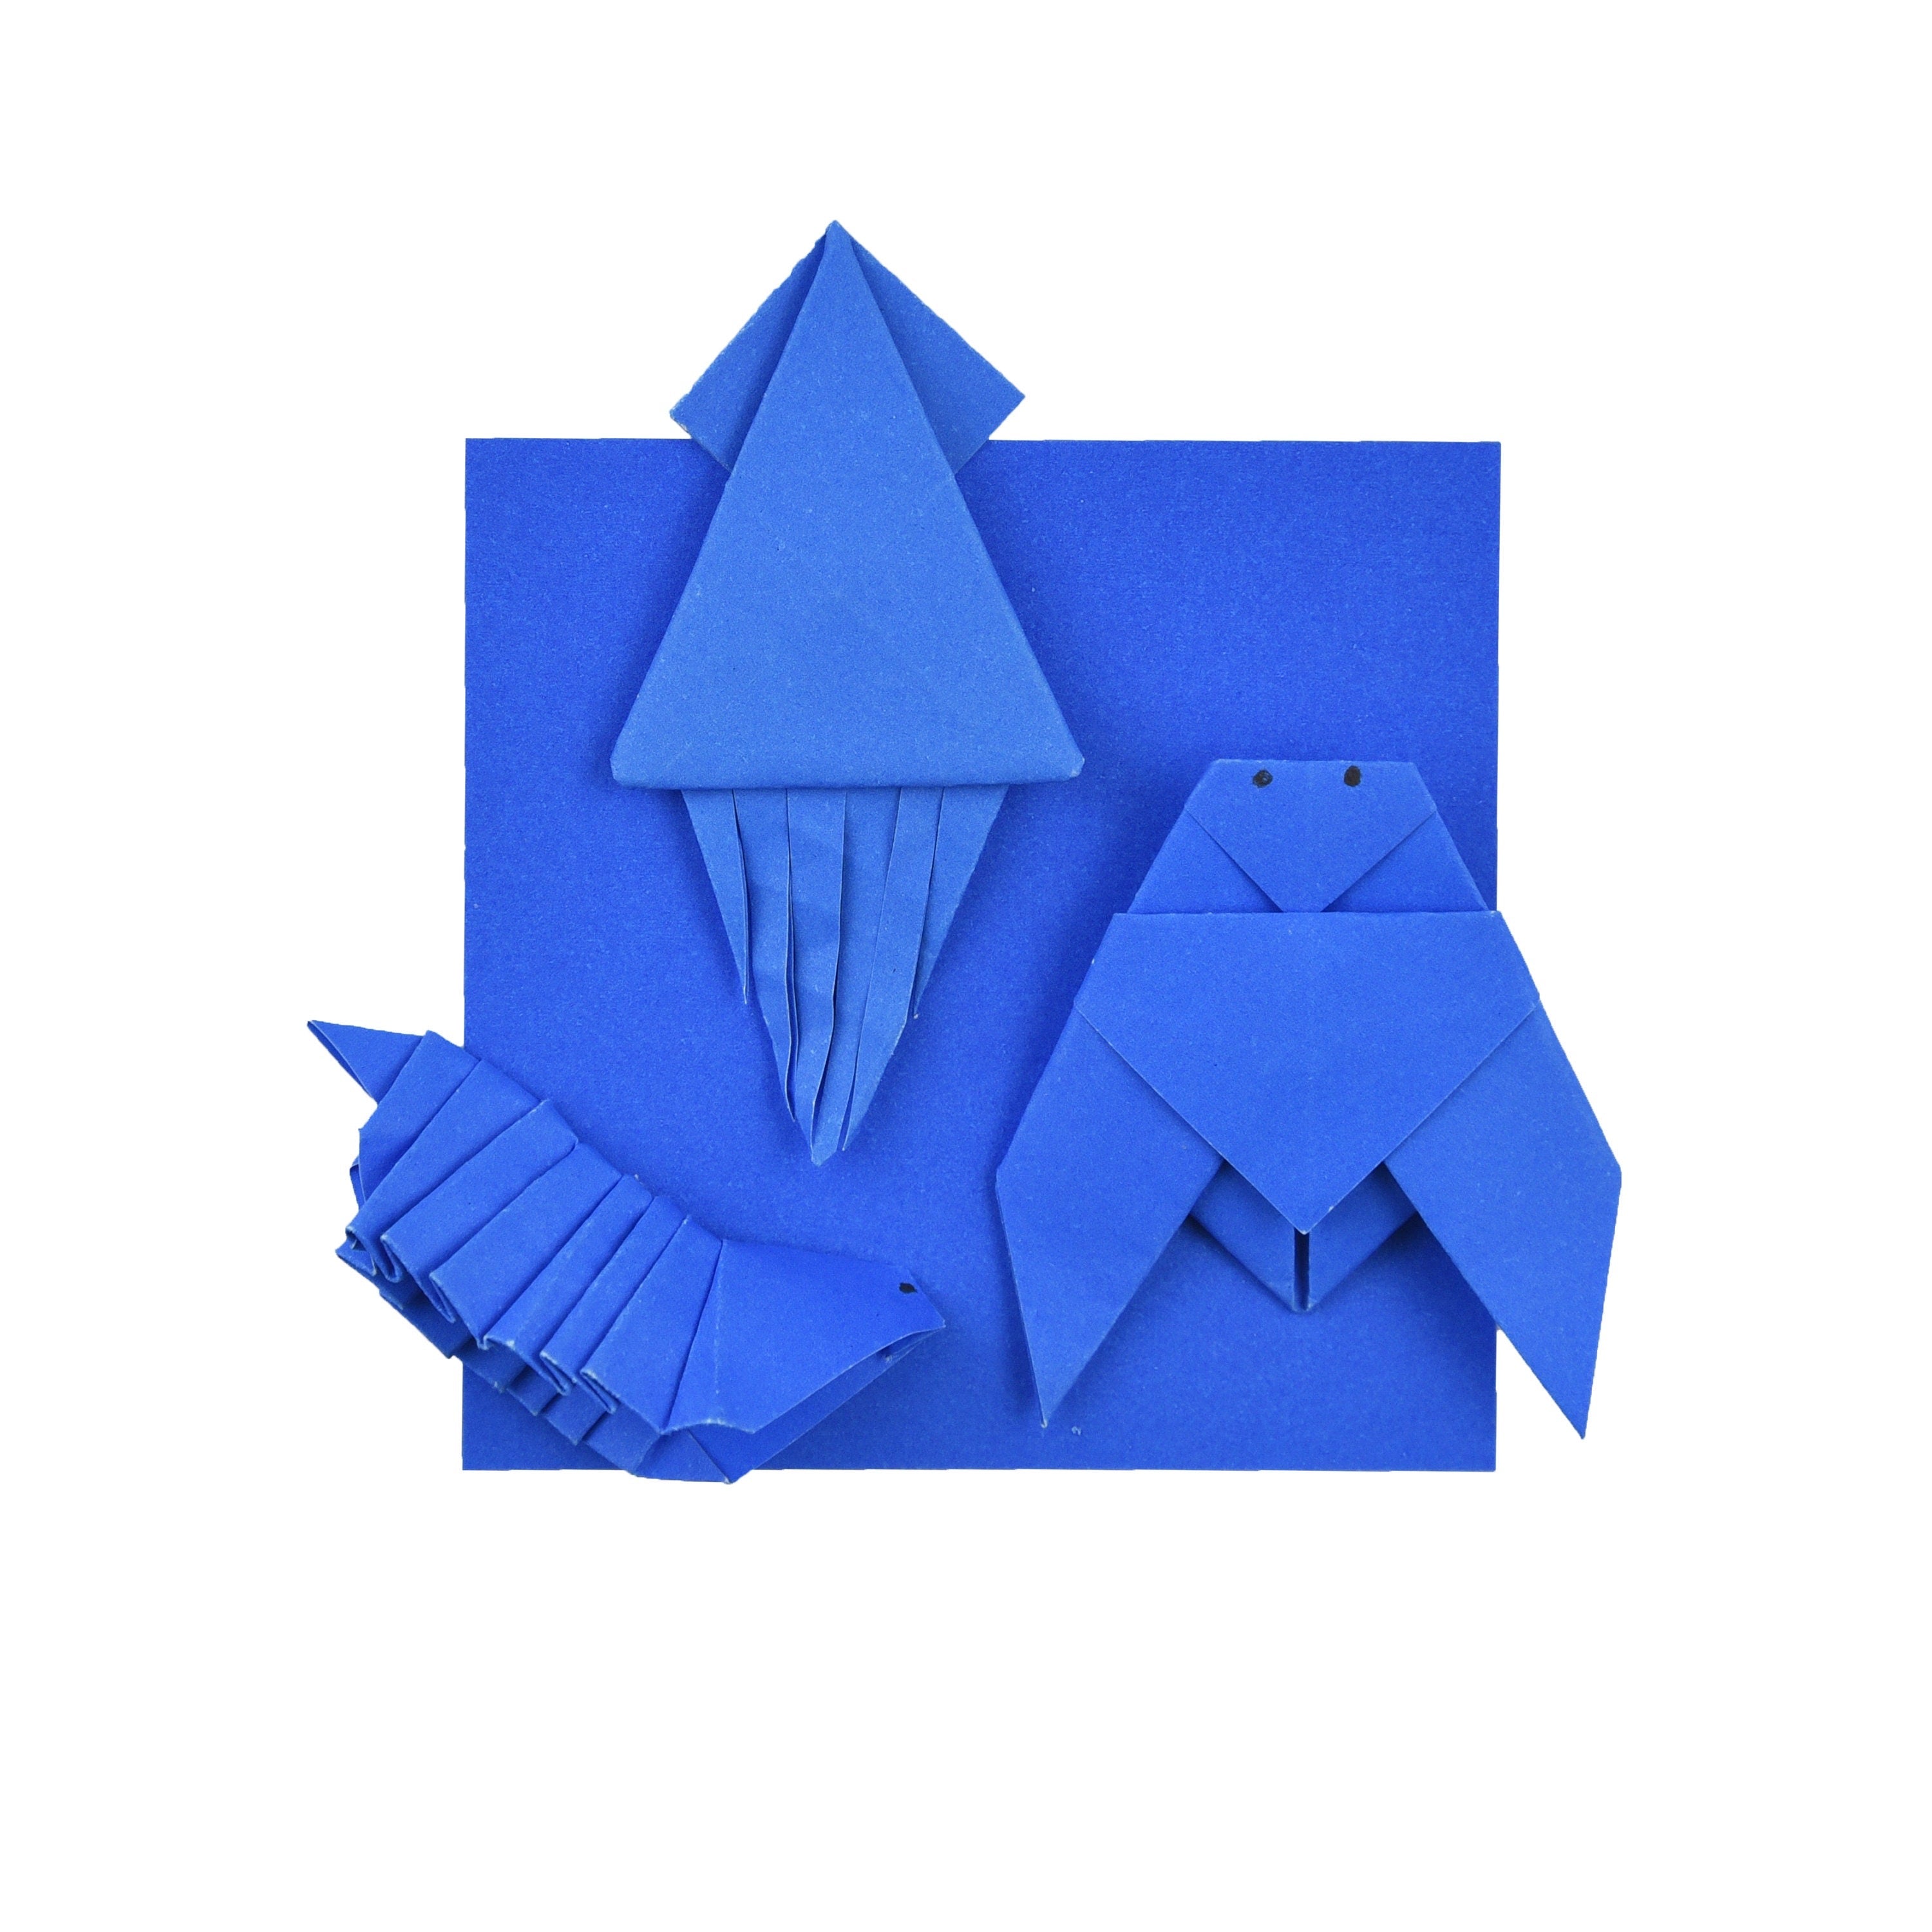 100 fogli di carta origami viola - 6x6 pollici - Confezione di carta quadrata per piegare, gru origami e decorazioni - P08